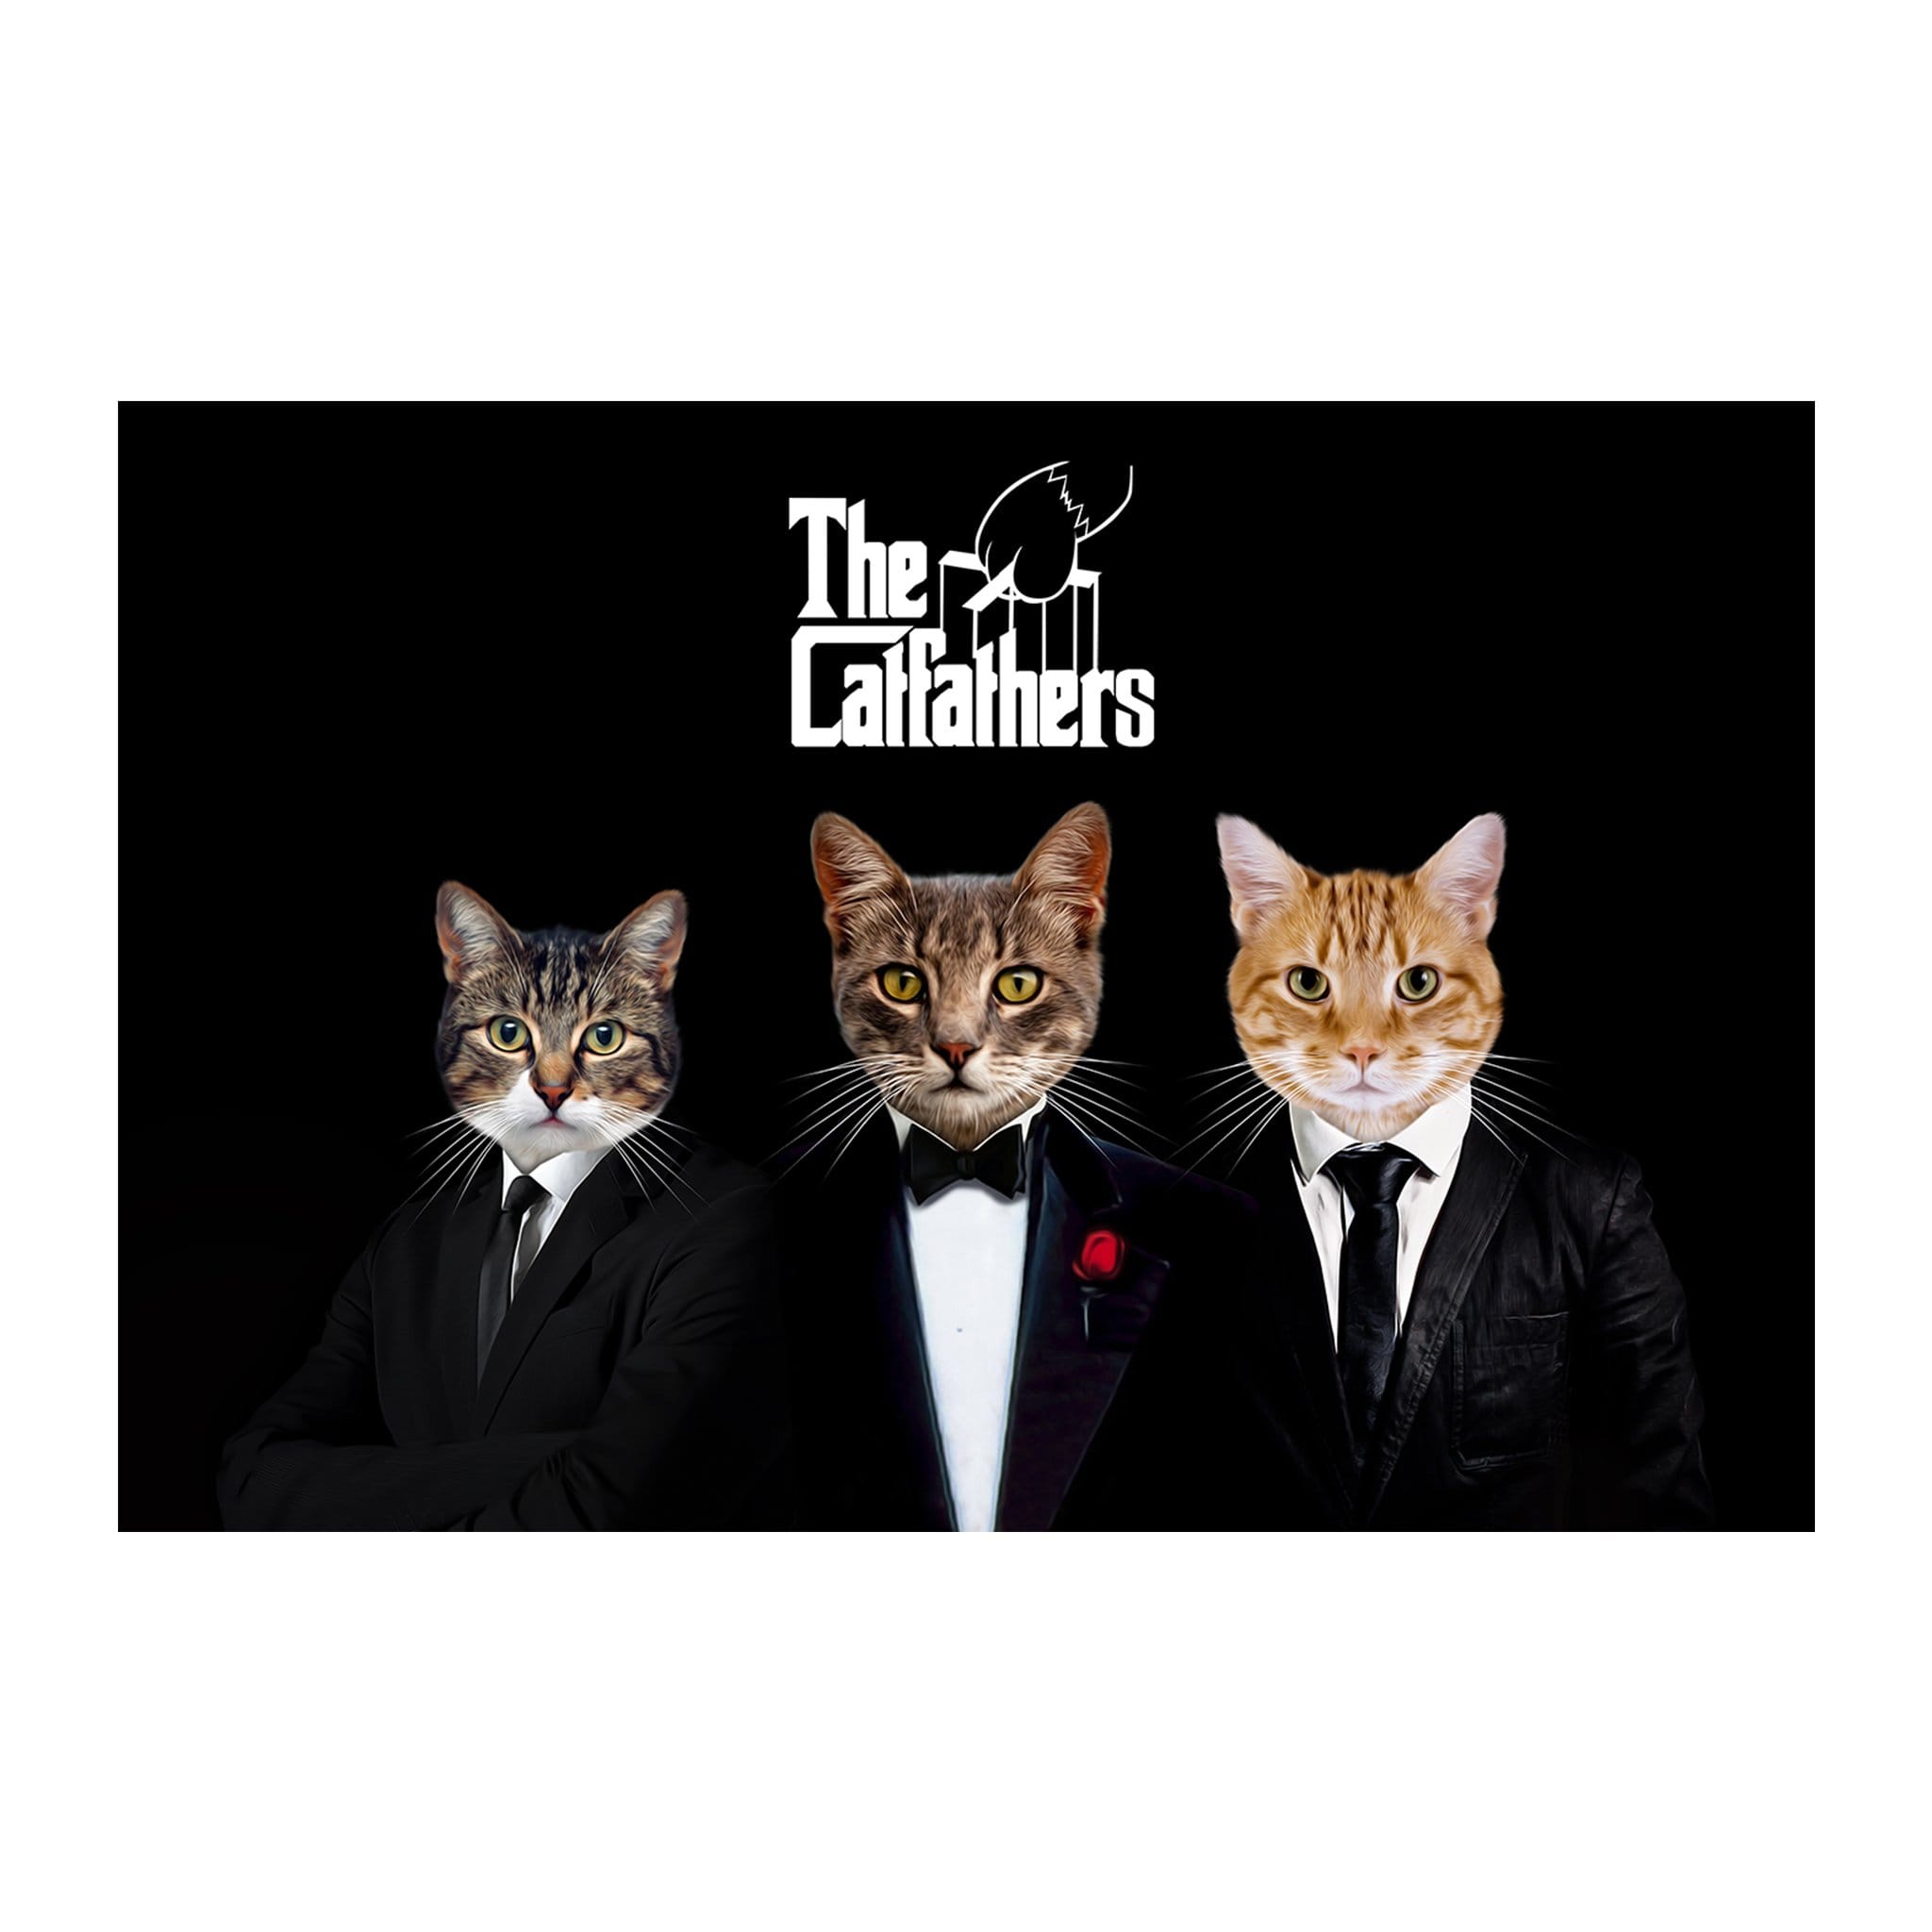 'The Catfathers' 3 Pet Digital Portrait